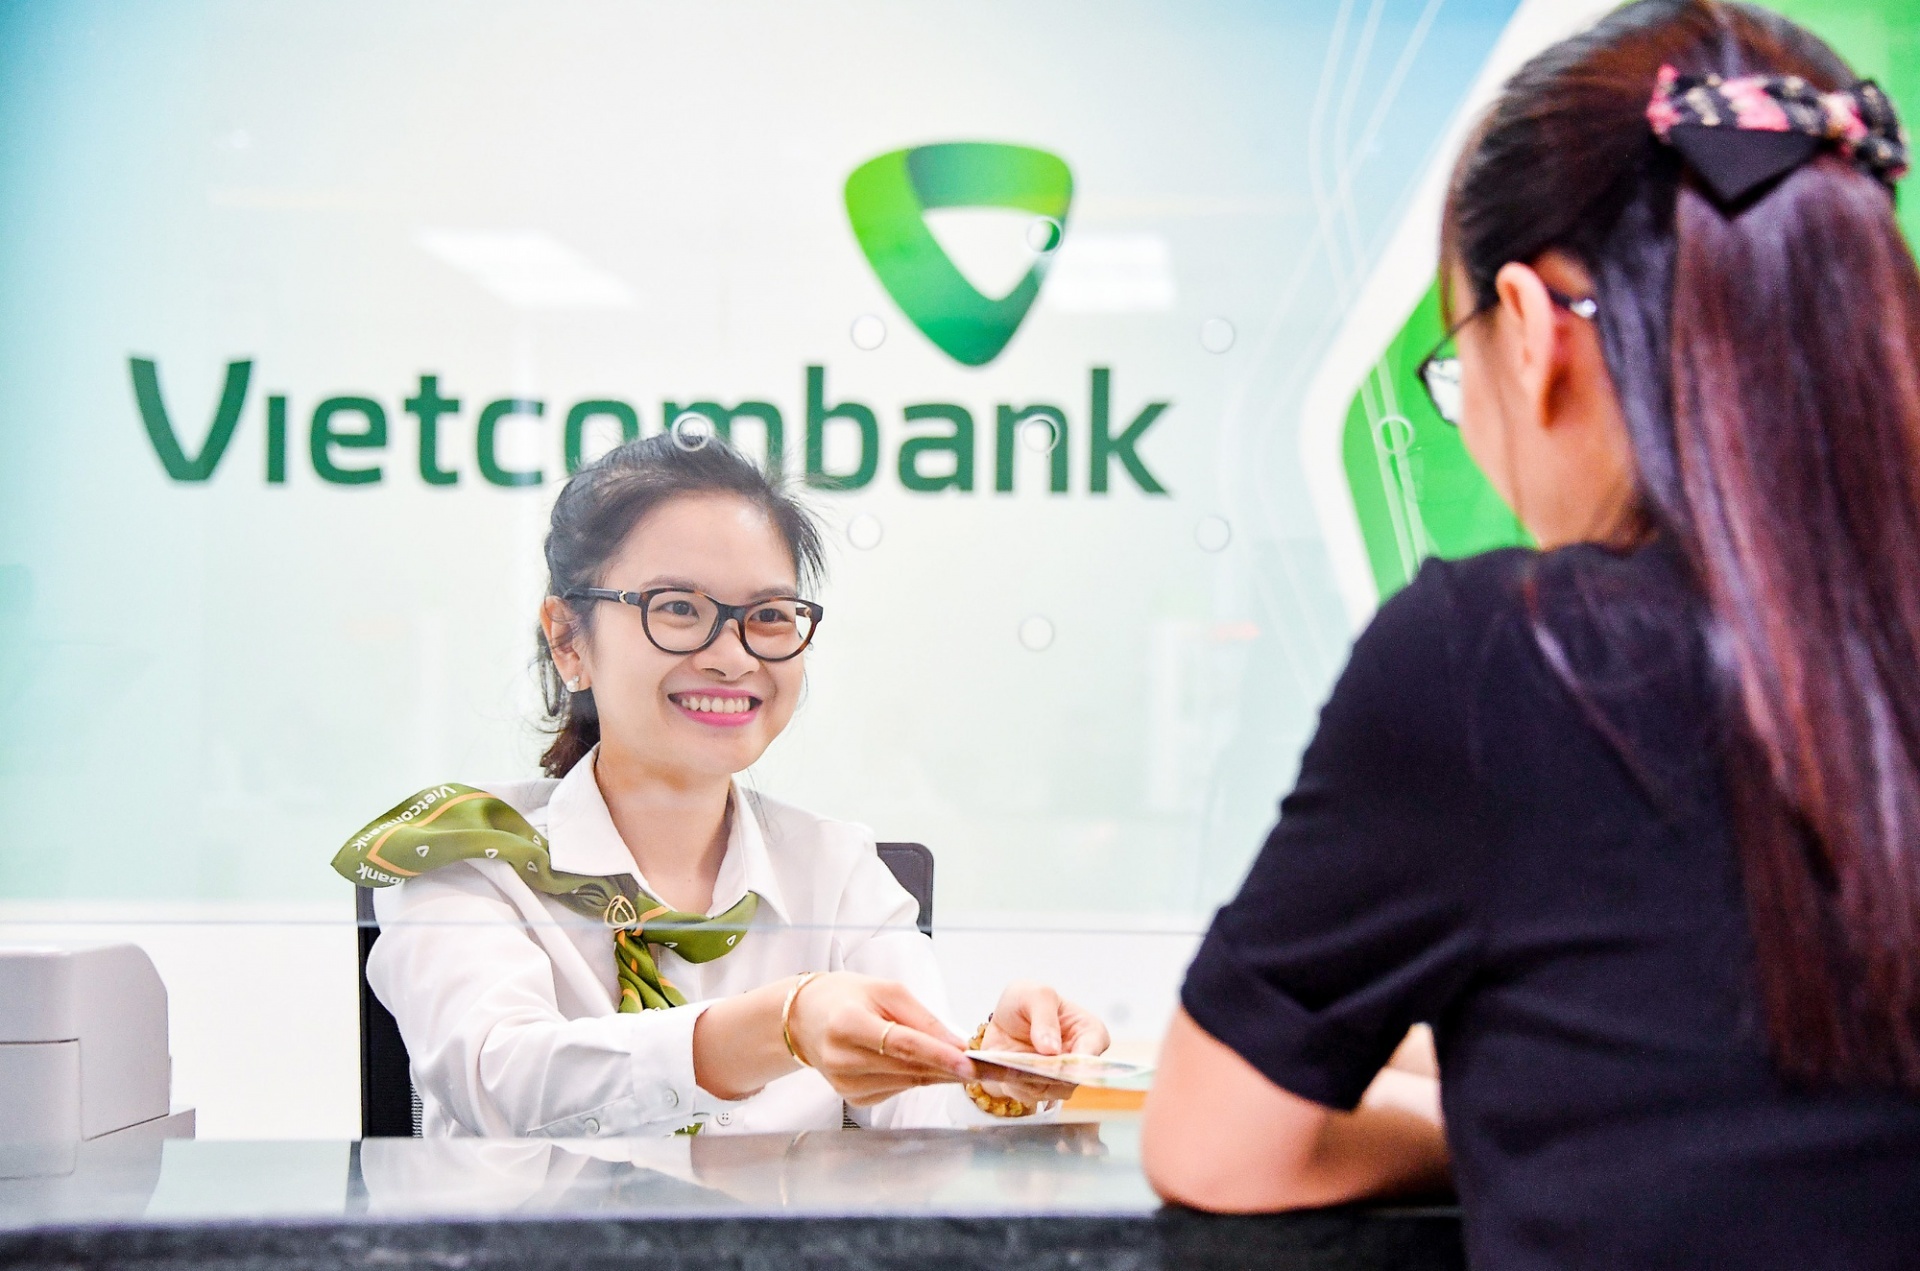 Vietcombank mở lối đi trước để thành công